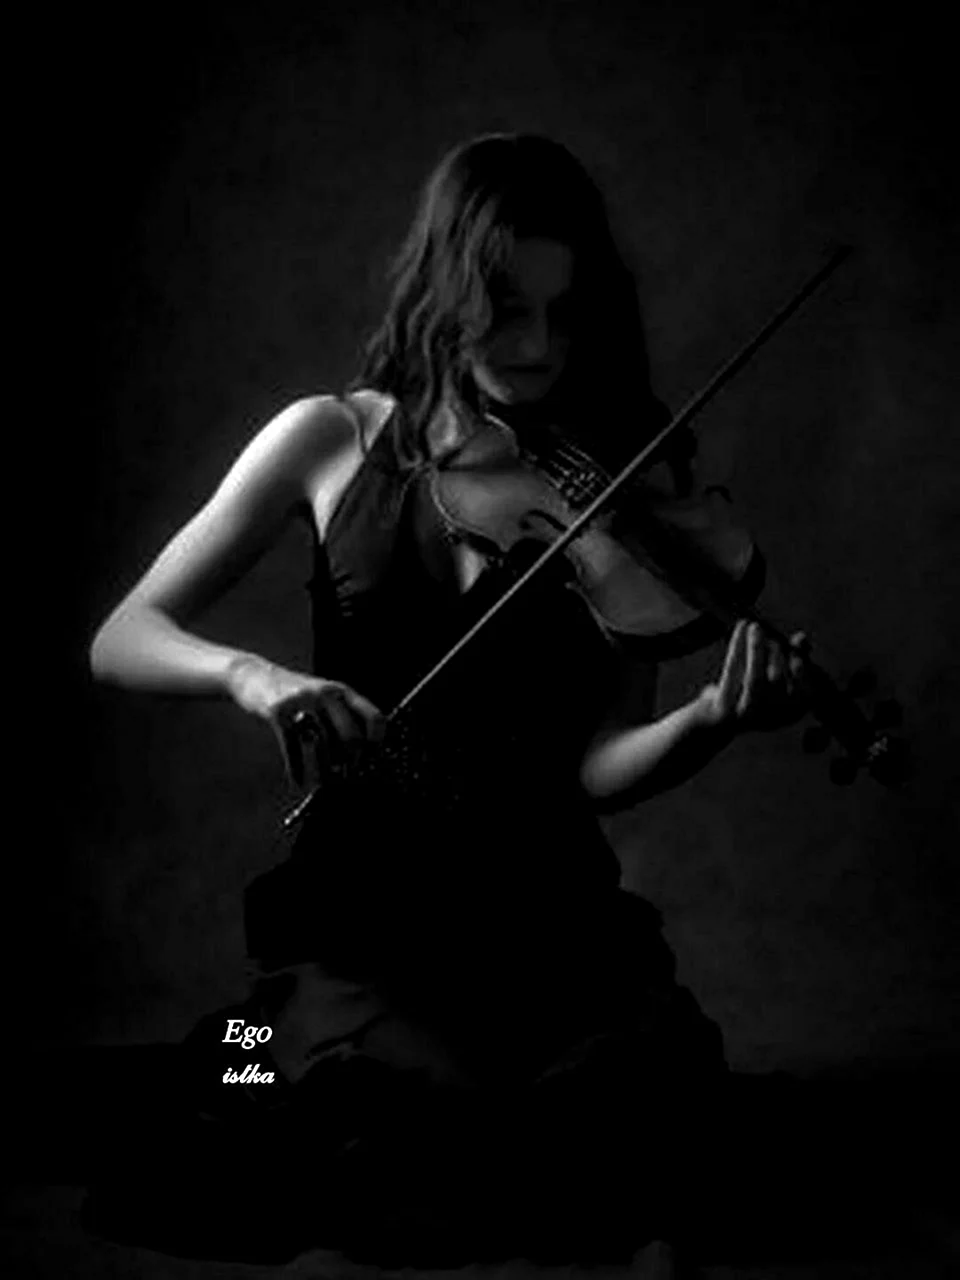 Woman Violin